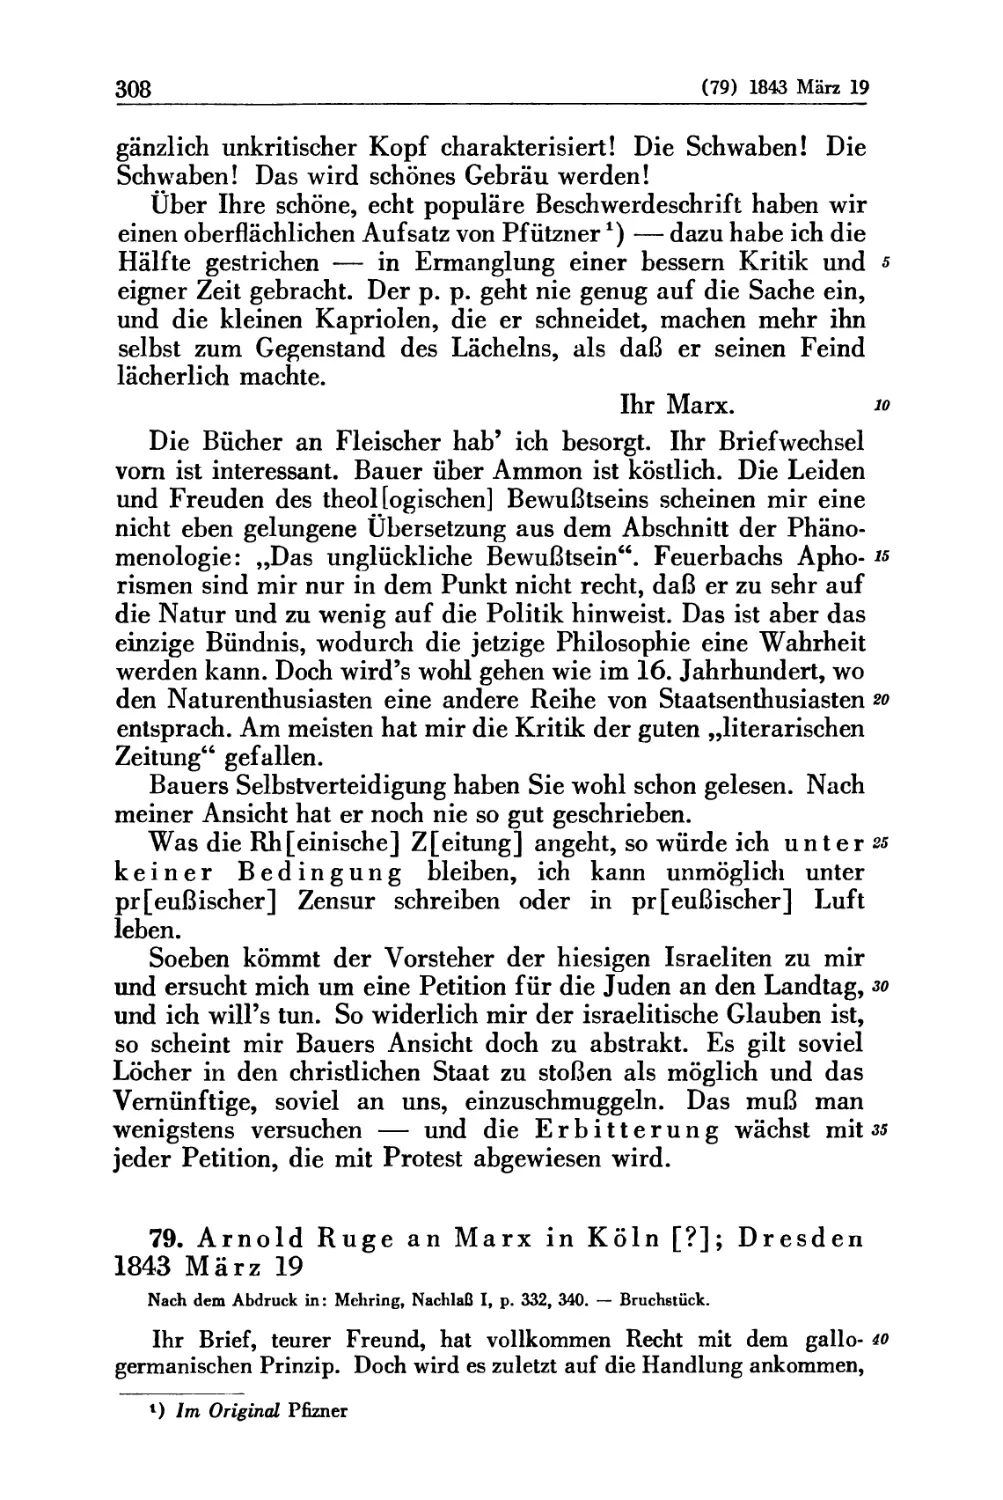 79. Arnold Ruge an Marx in Köln [?]; Dresden 1843 März 19